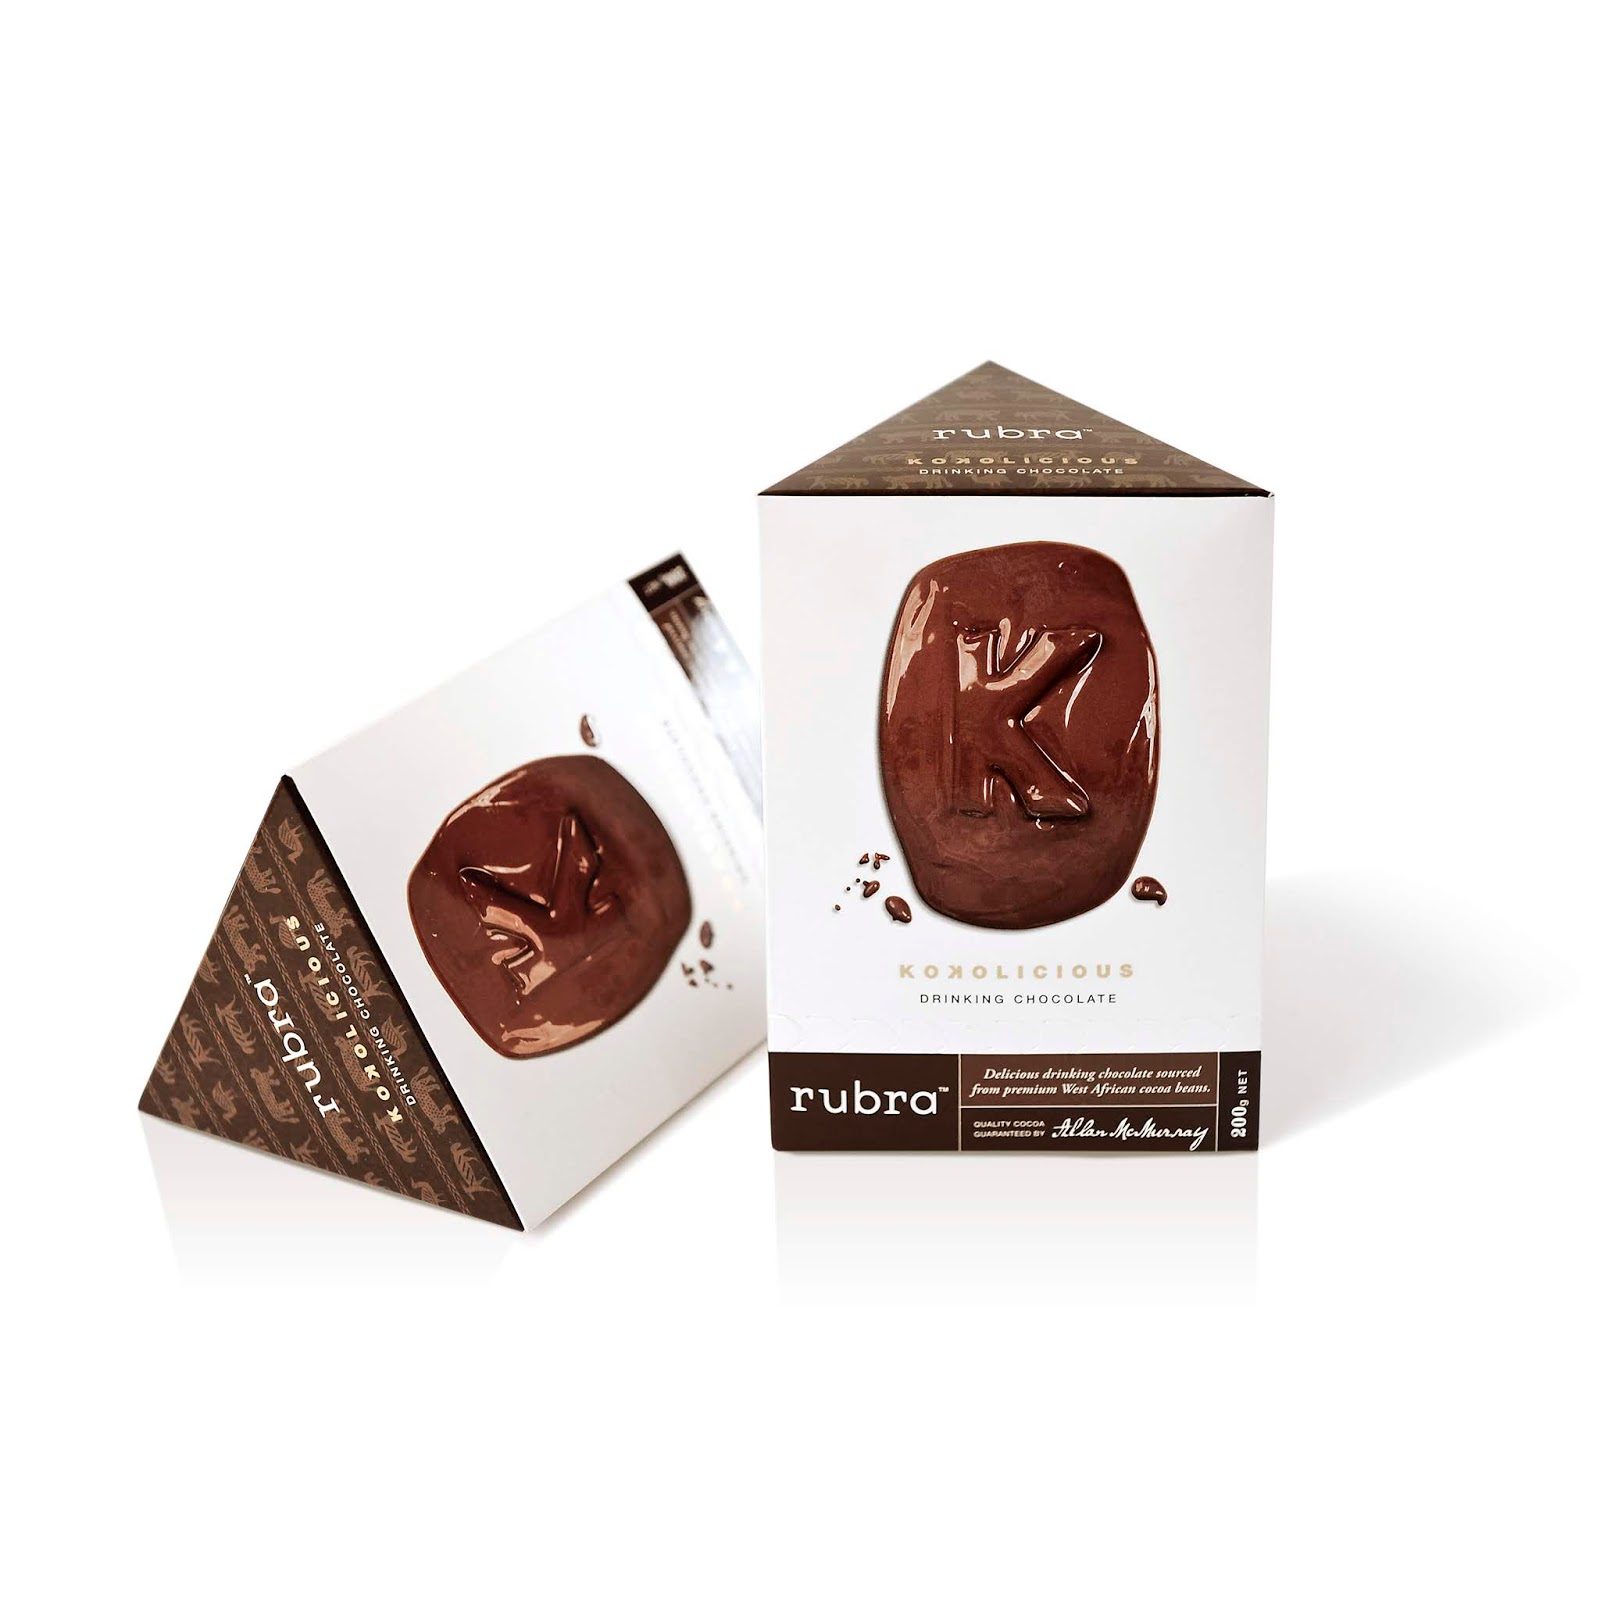 巧克力可可西安oe欧亿体育app官方下载
品牌策划包装设计VI设计